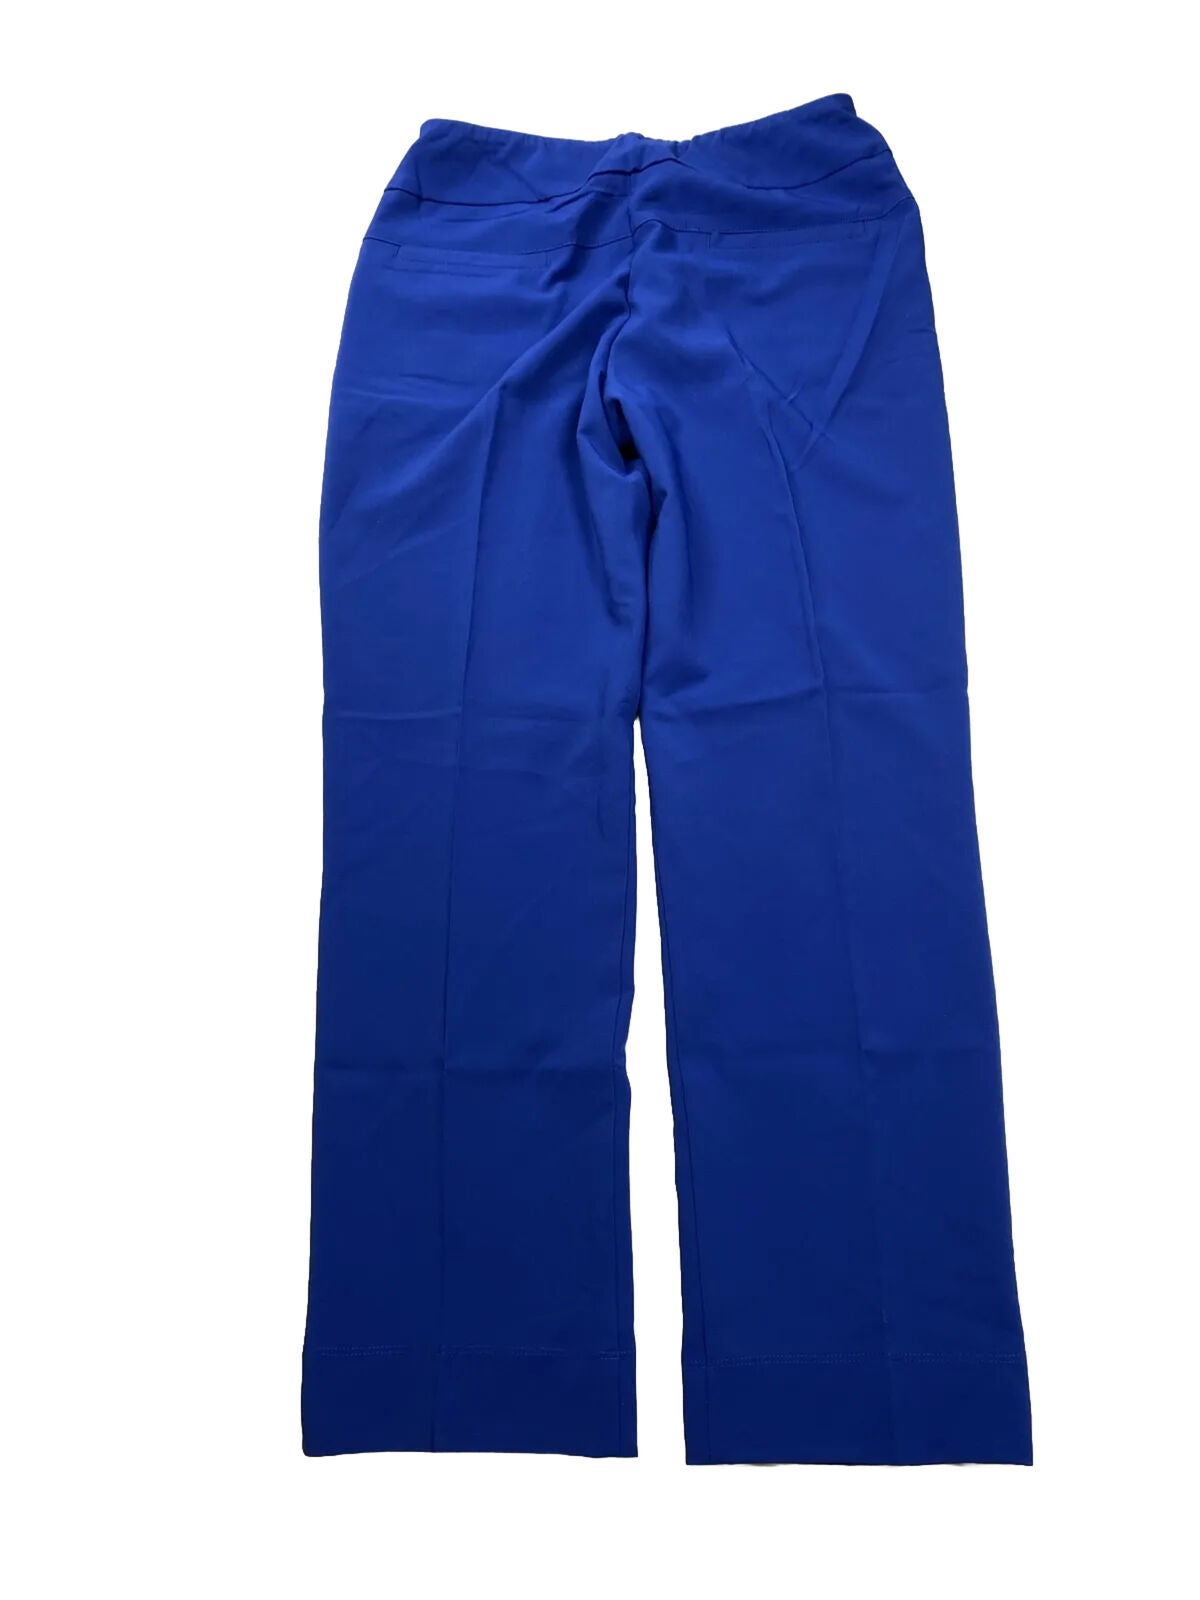 NUEVO Pantalones tobilleros elásticos en 4 direcciones azules Ibkul para mujer - 10